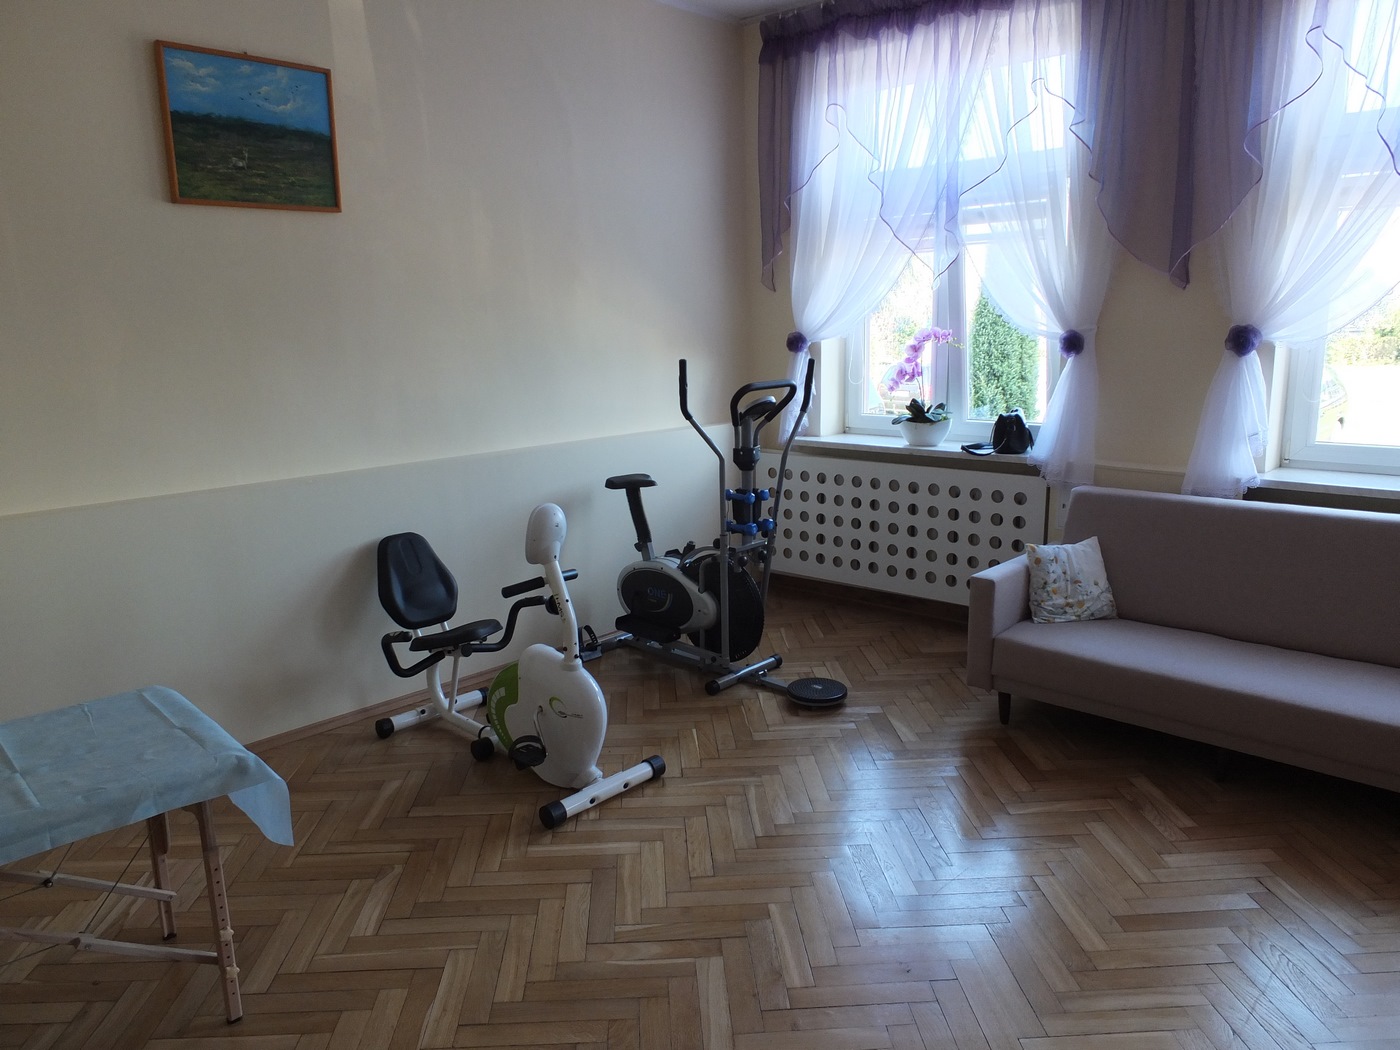 Pomieszczenie do rehabilitacji w Dziennym Domu Pomocy, łóżko rehabilitacyjne, rowerek stacjonarny, orbitrek, w tle okno, po prawej stronie sofa